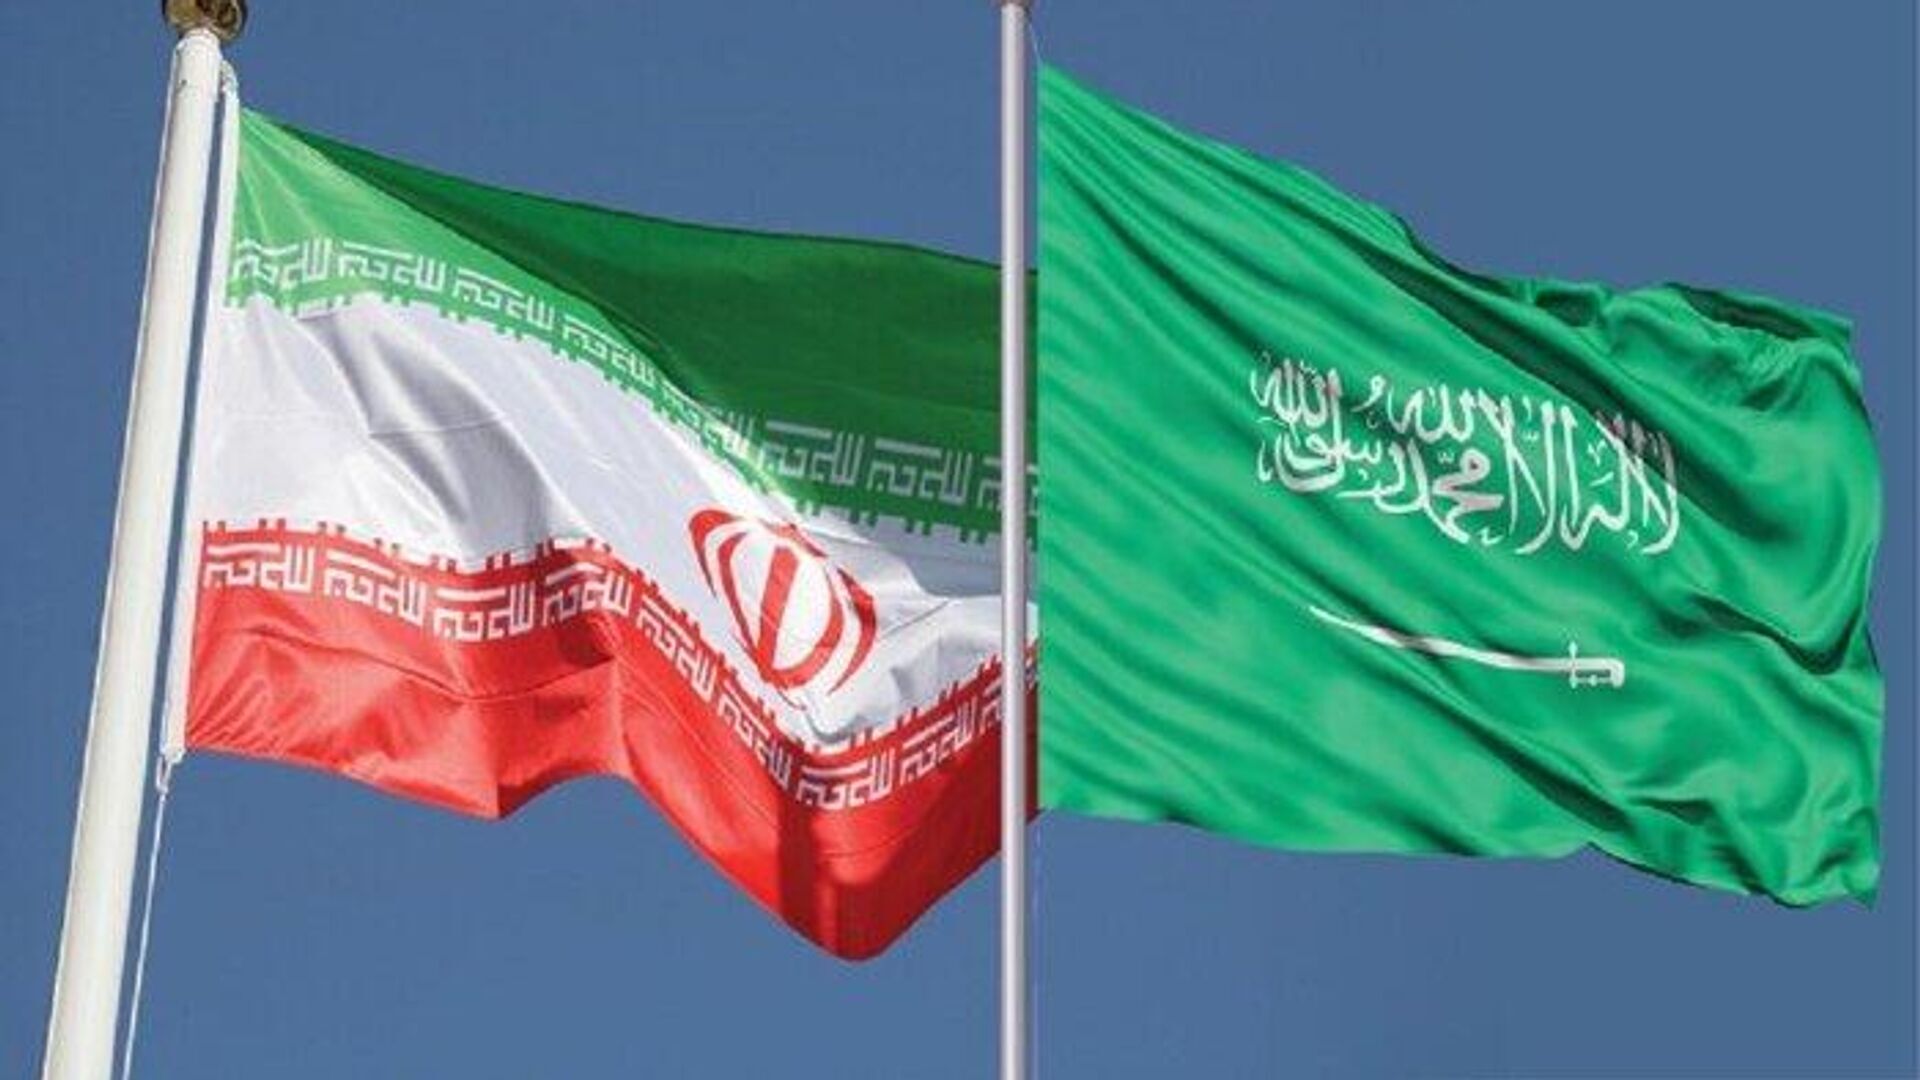 میدان آرش صرفا متعلق به ما و کویت است/ خواستار مذاکره با ایران در این خصوص هستیم